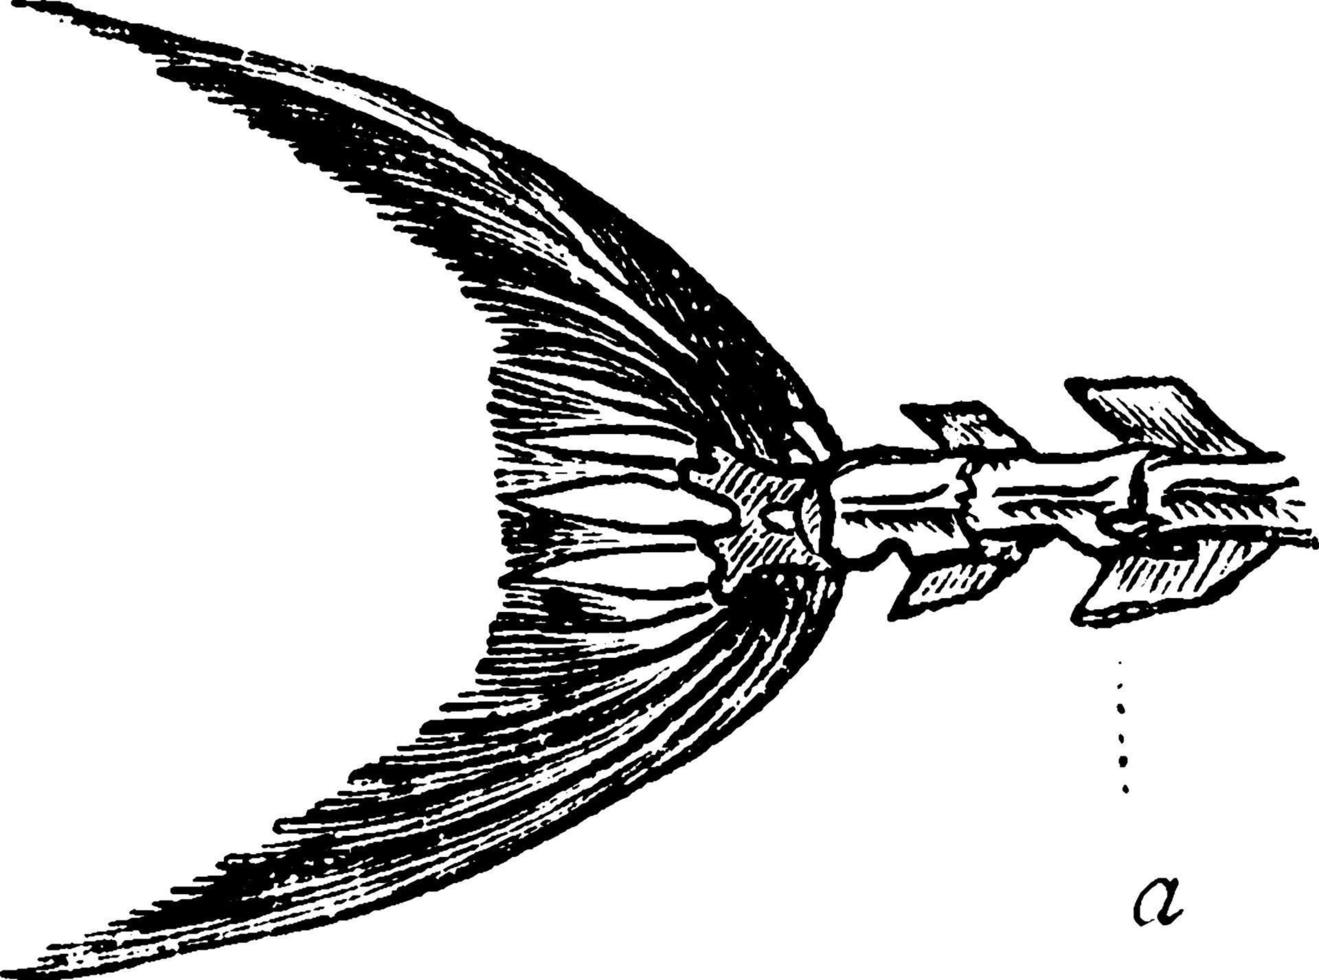 queue de poisson, illustration vintage. vecteur